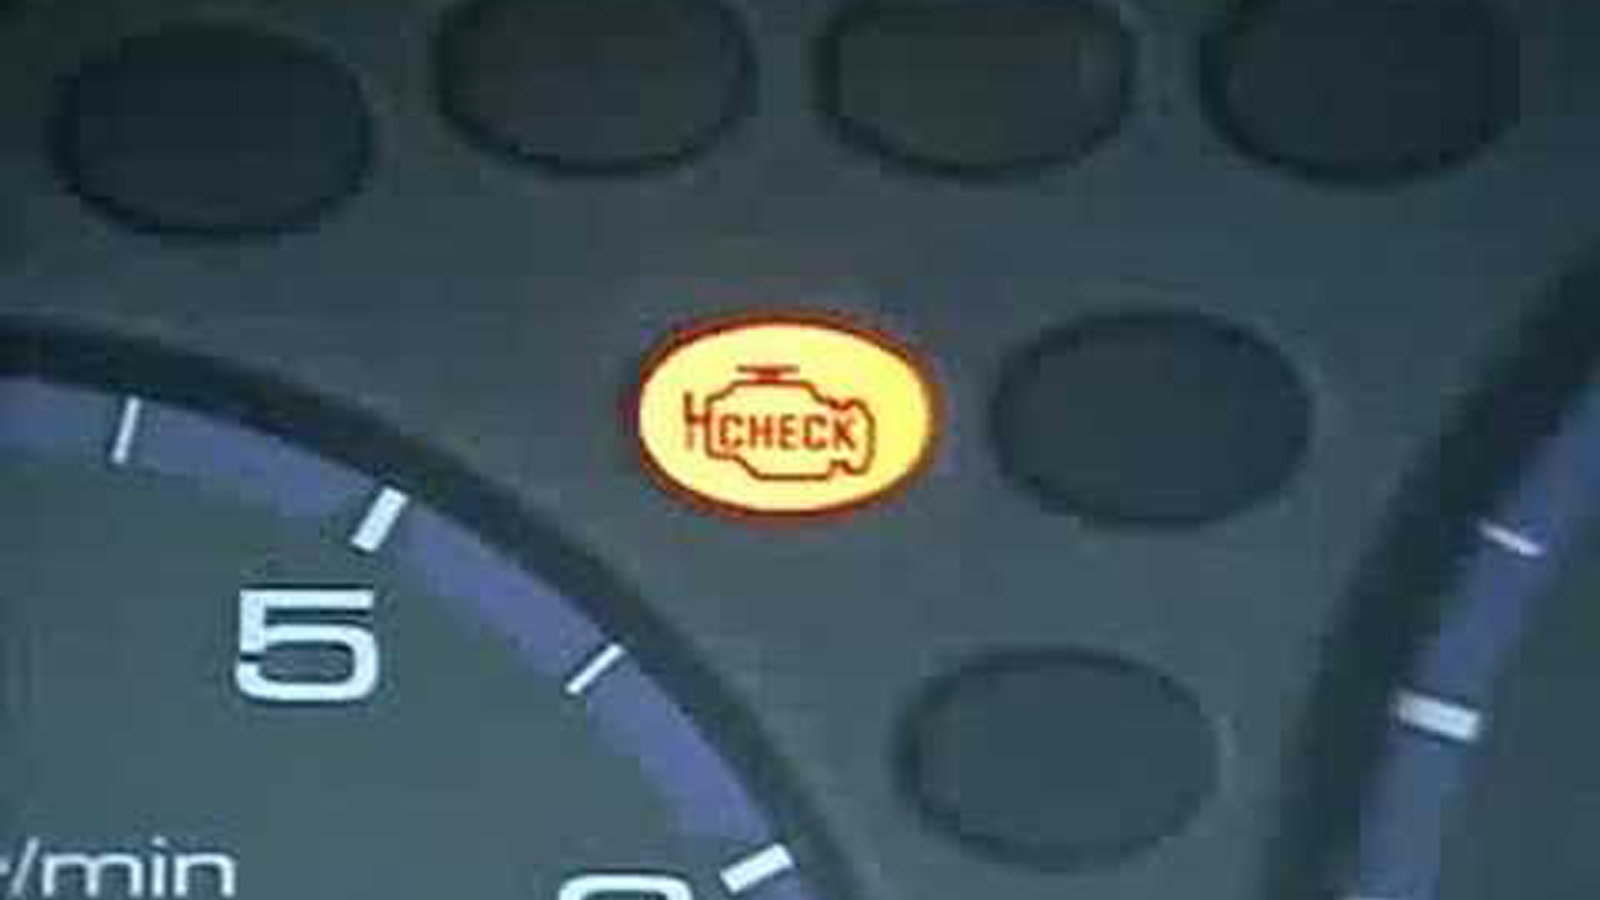 Honda: How to Reset the Check Engine Light  Honda-tech